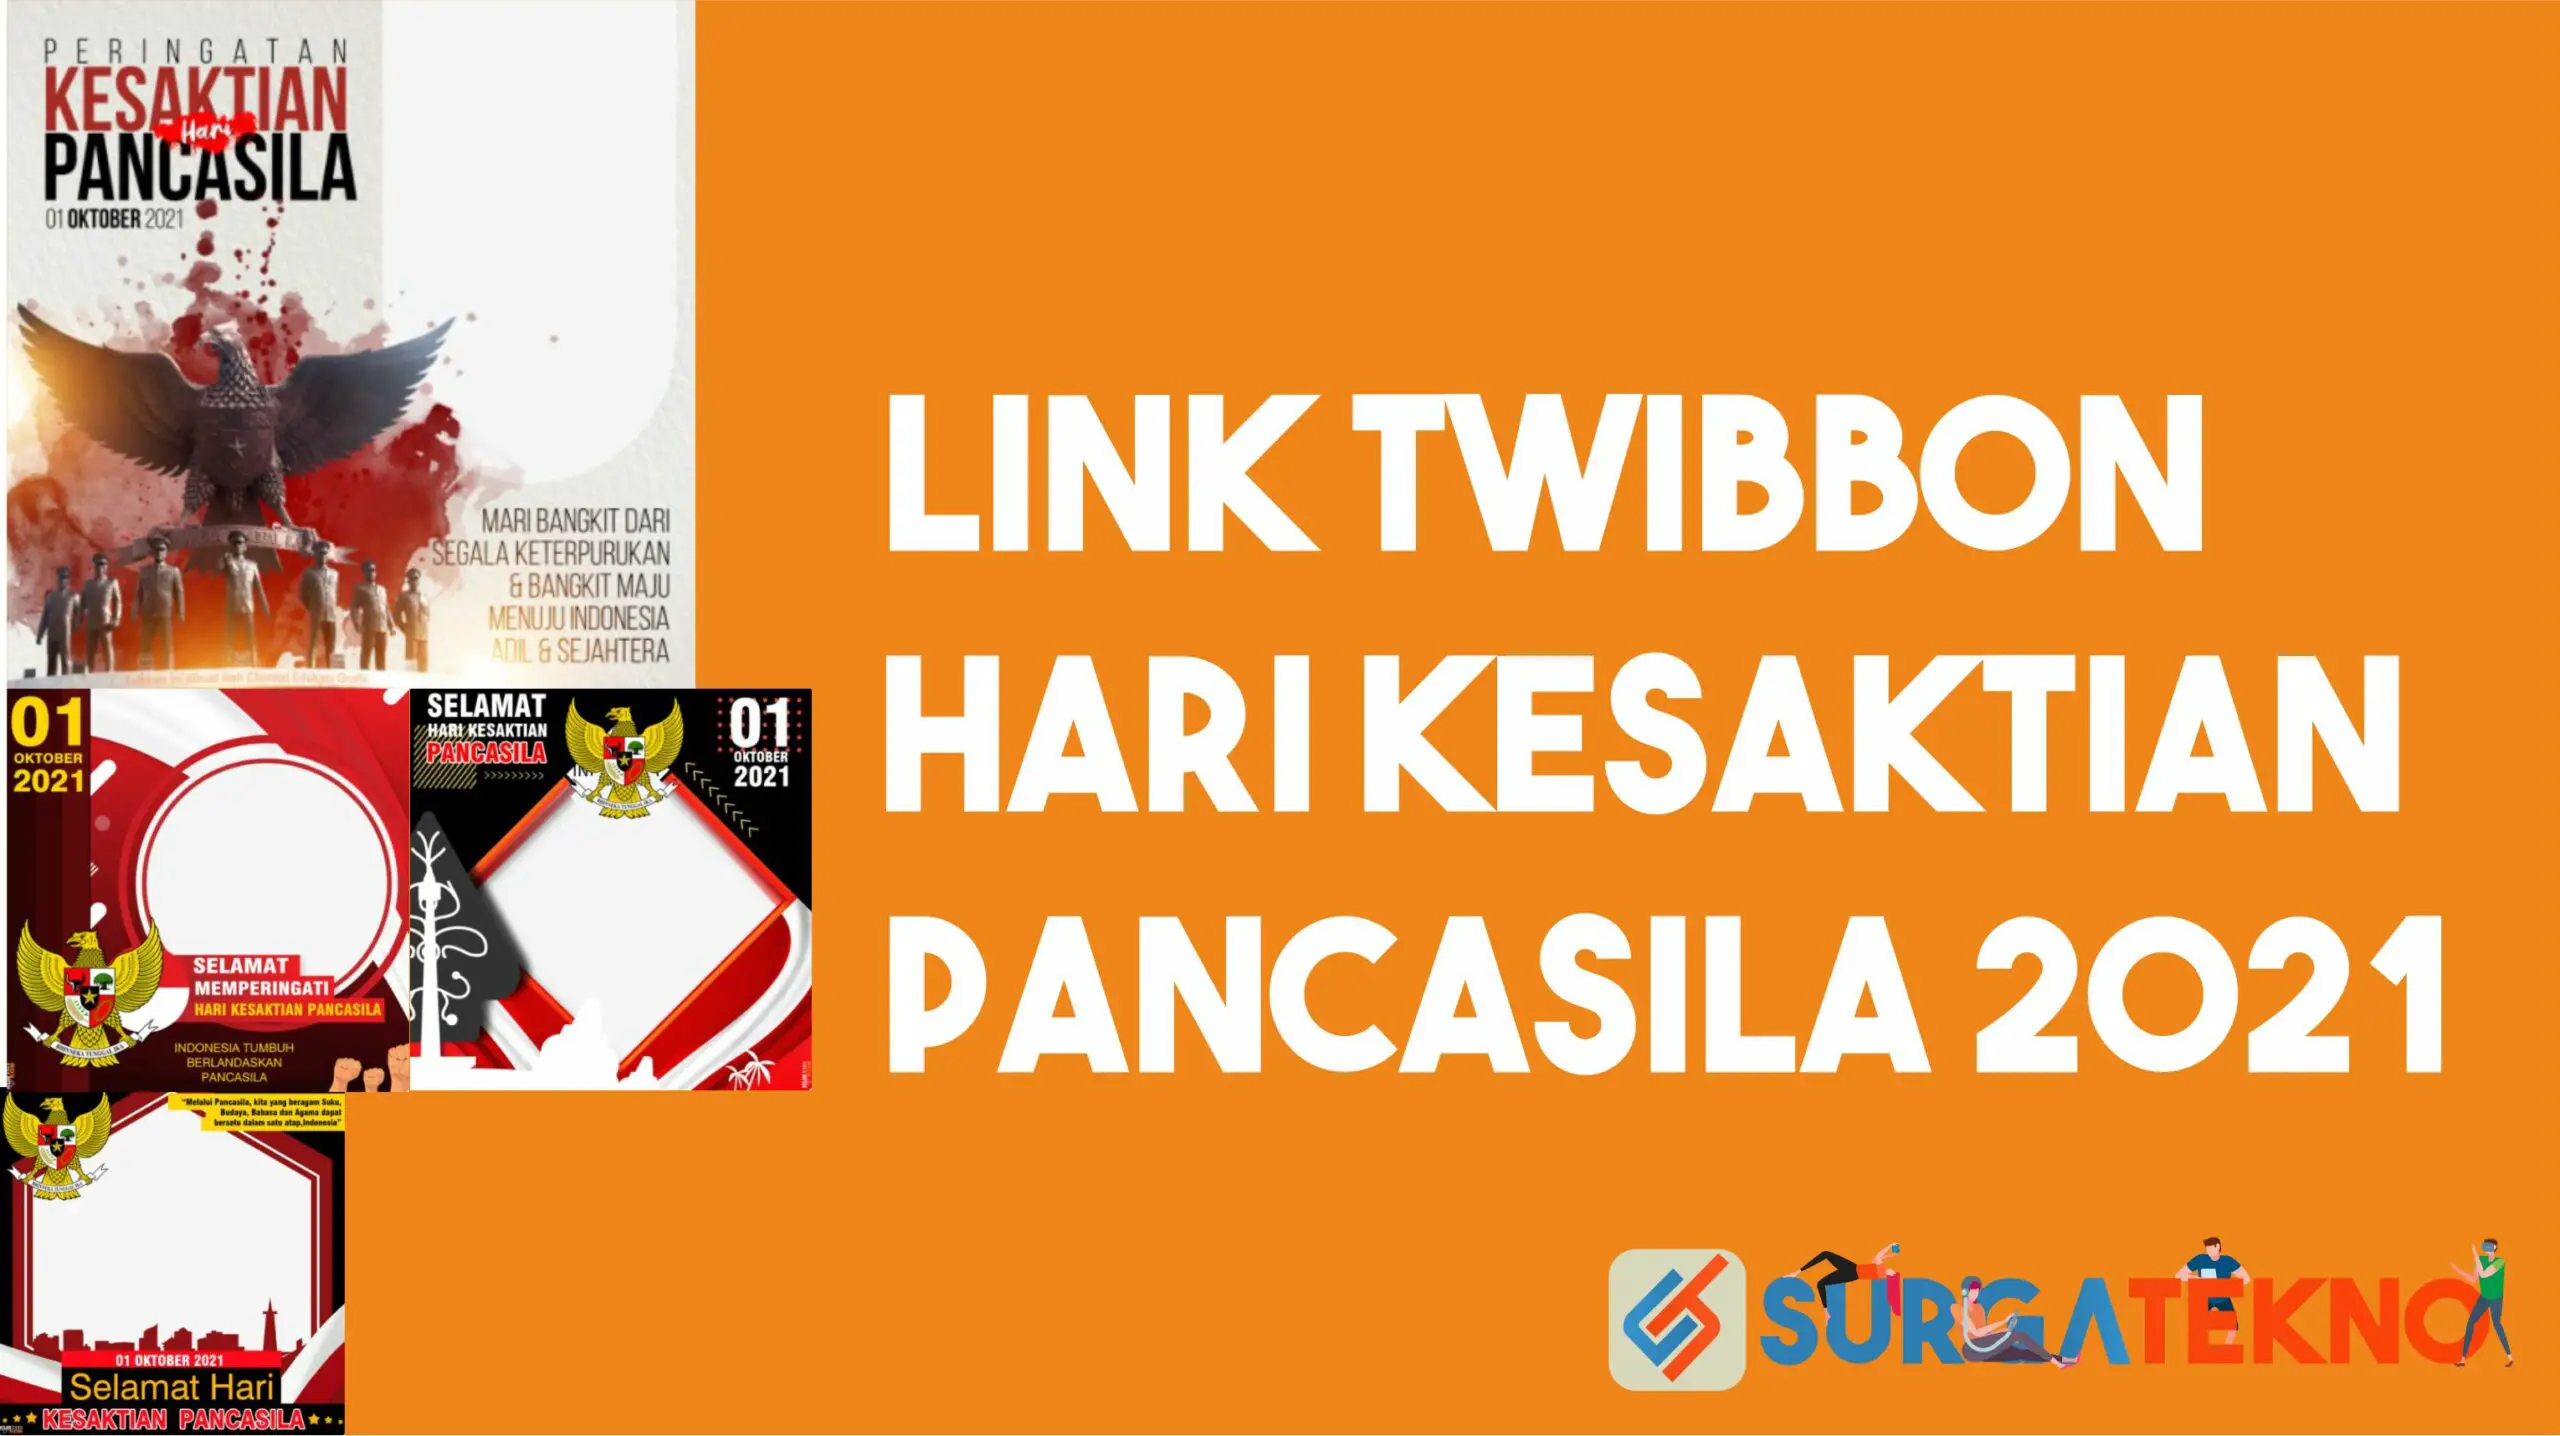 Link Twibbon Hari Kesaktian Pancasila 2021